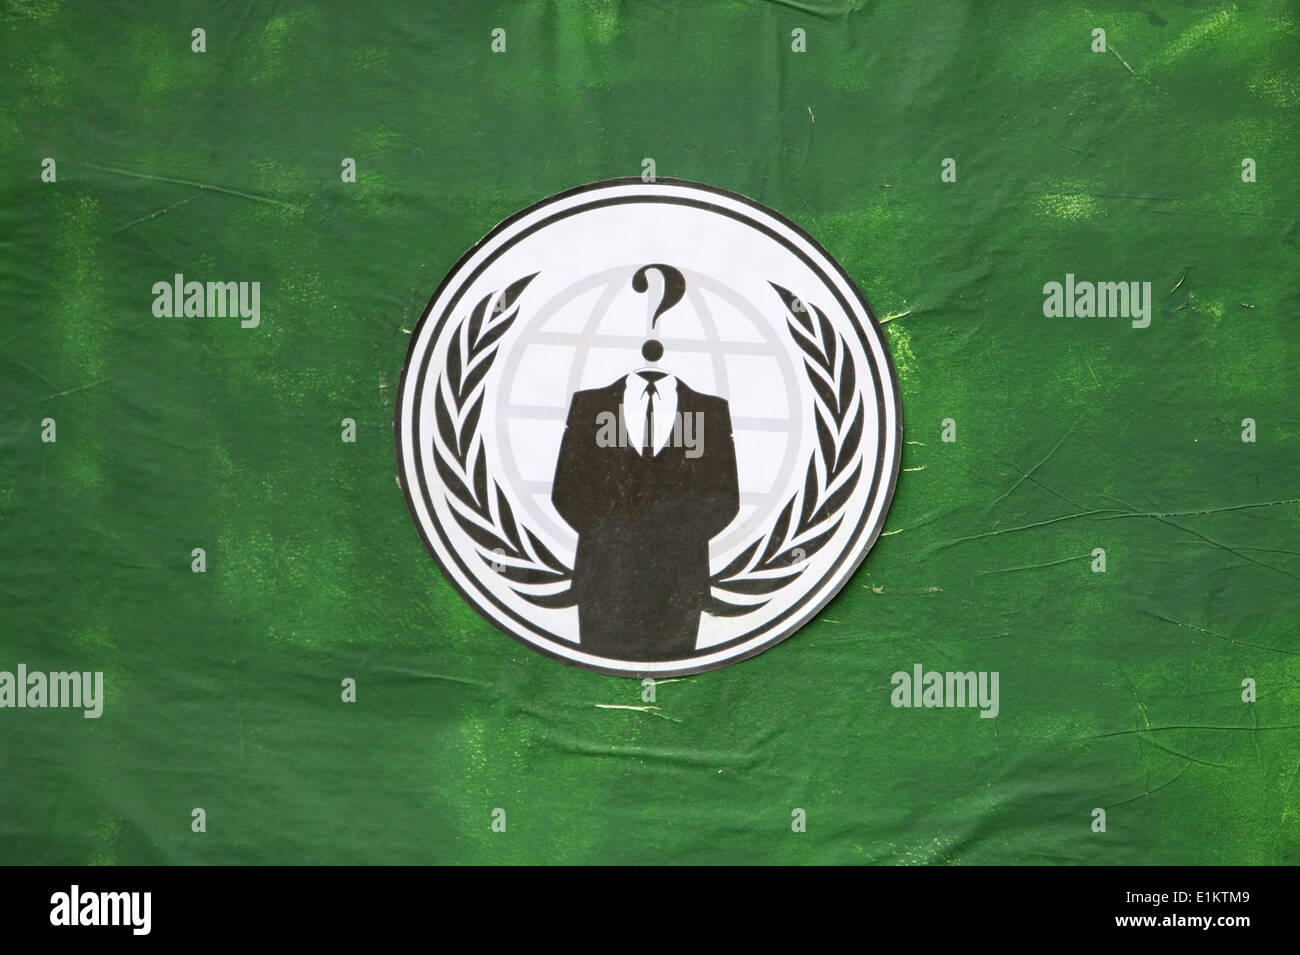 Un flag il convogliamento di simbolismo associato con l'anonimo. Le immagini del 'suit senza una testa' rappresenta leaderless organiz Foto Stock